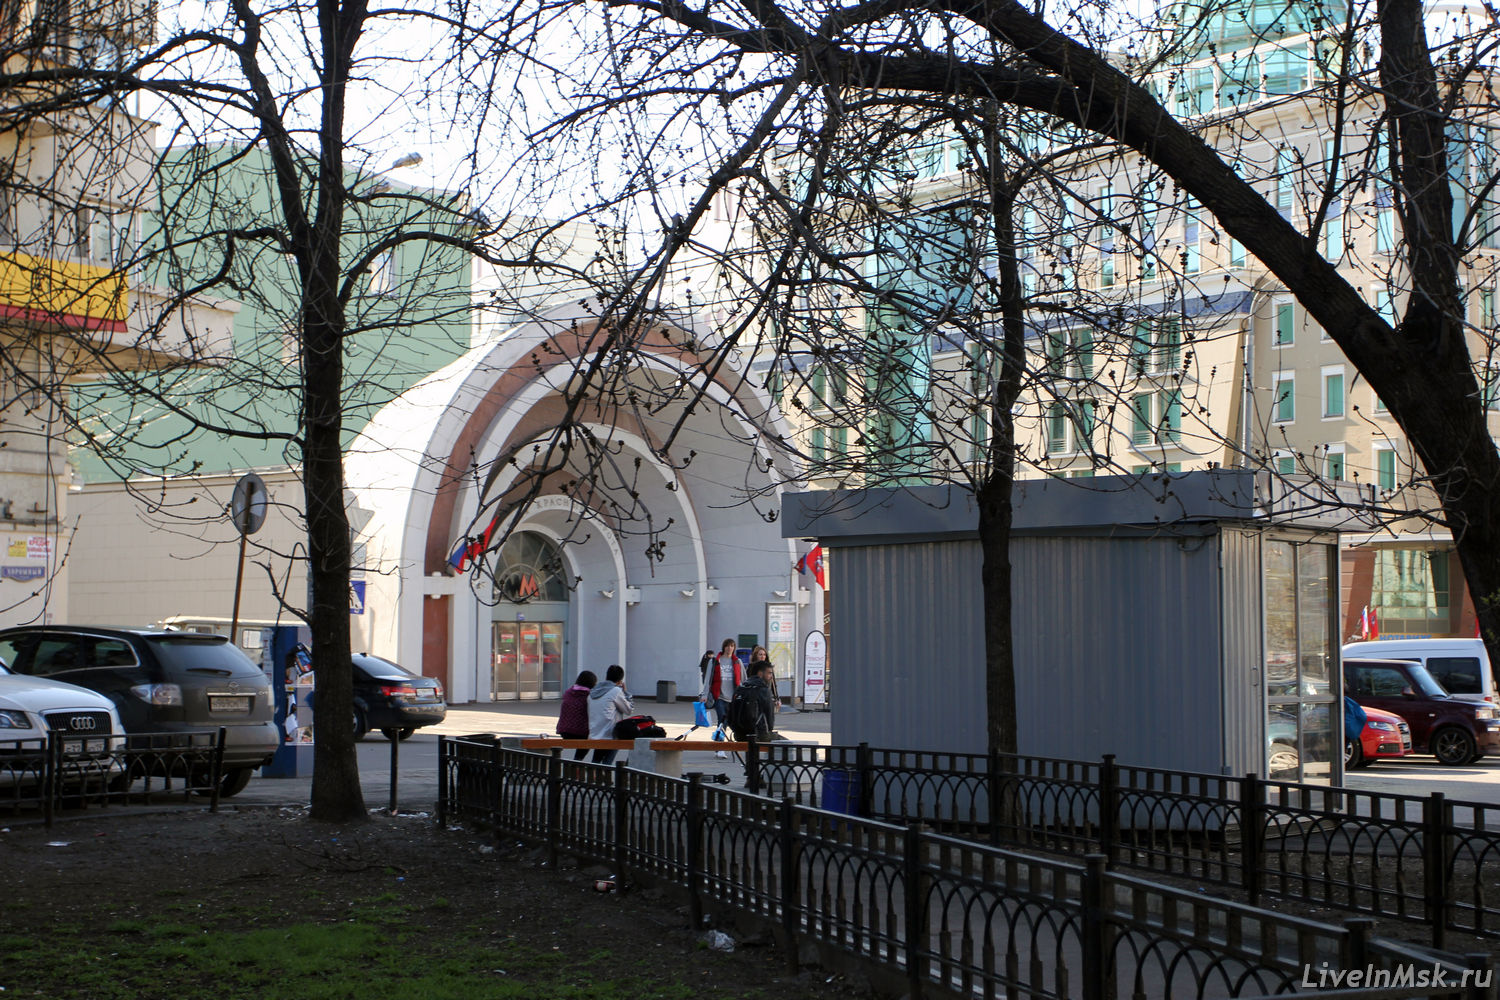 Метро Красные ворота, фото 2014 года